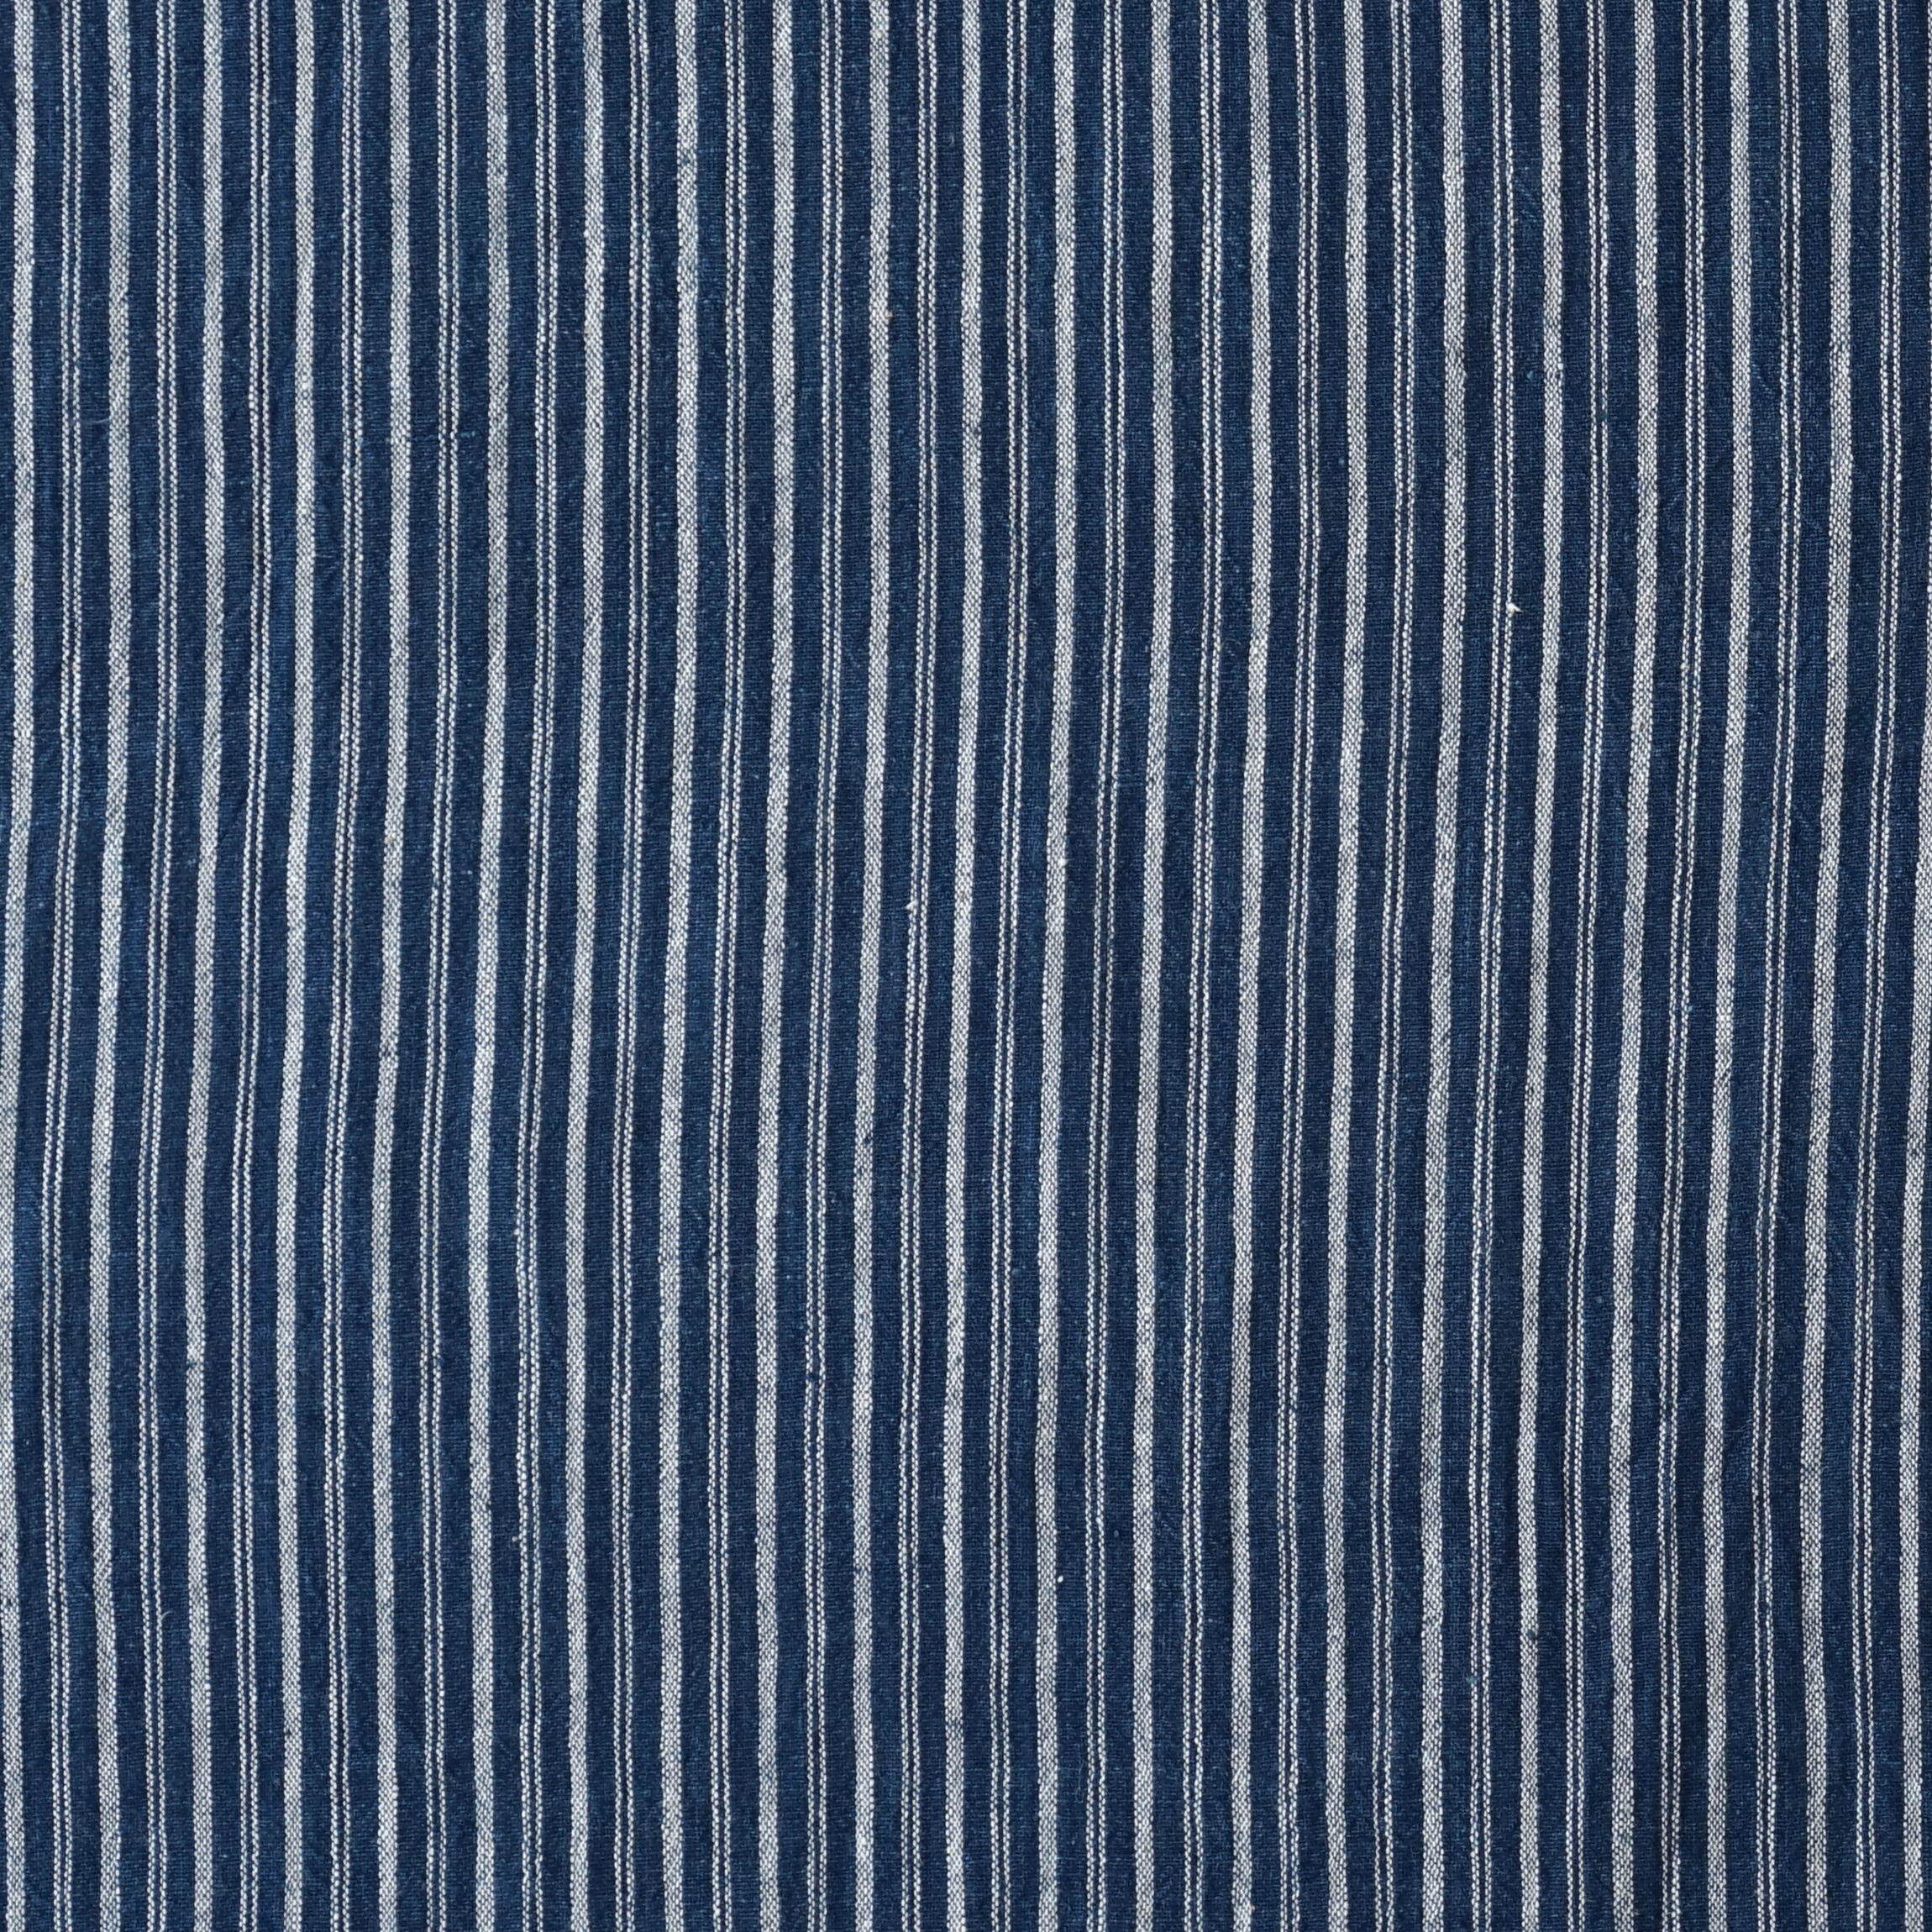 100% Handloom Woven Cotton - Double Stripes - Natural Indigo Warp & Weft, White Warp - Flat